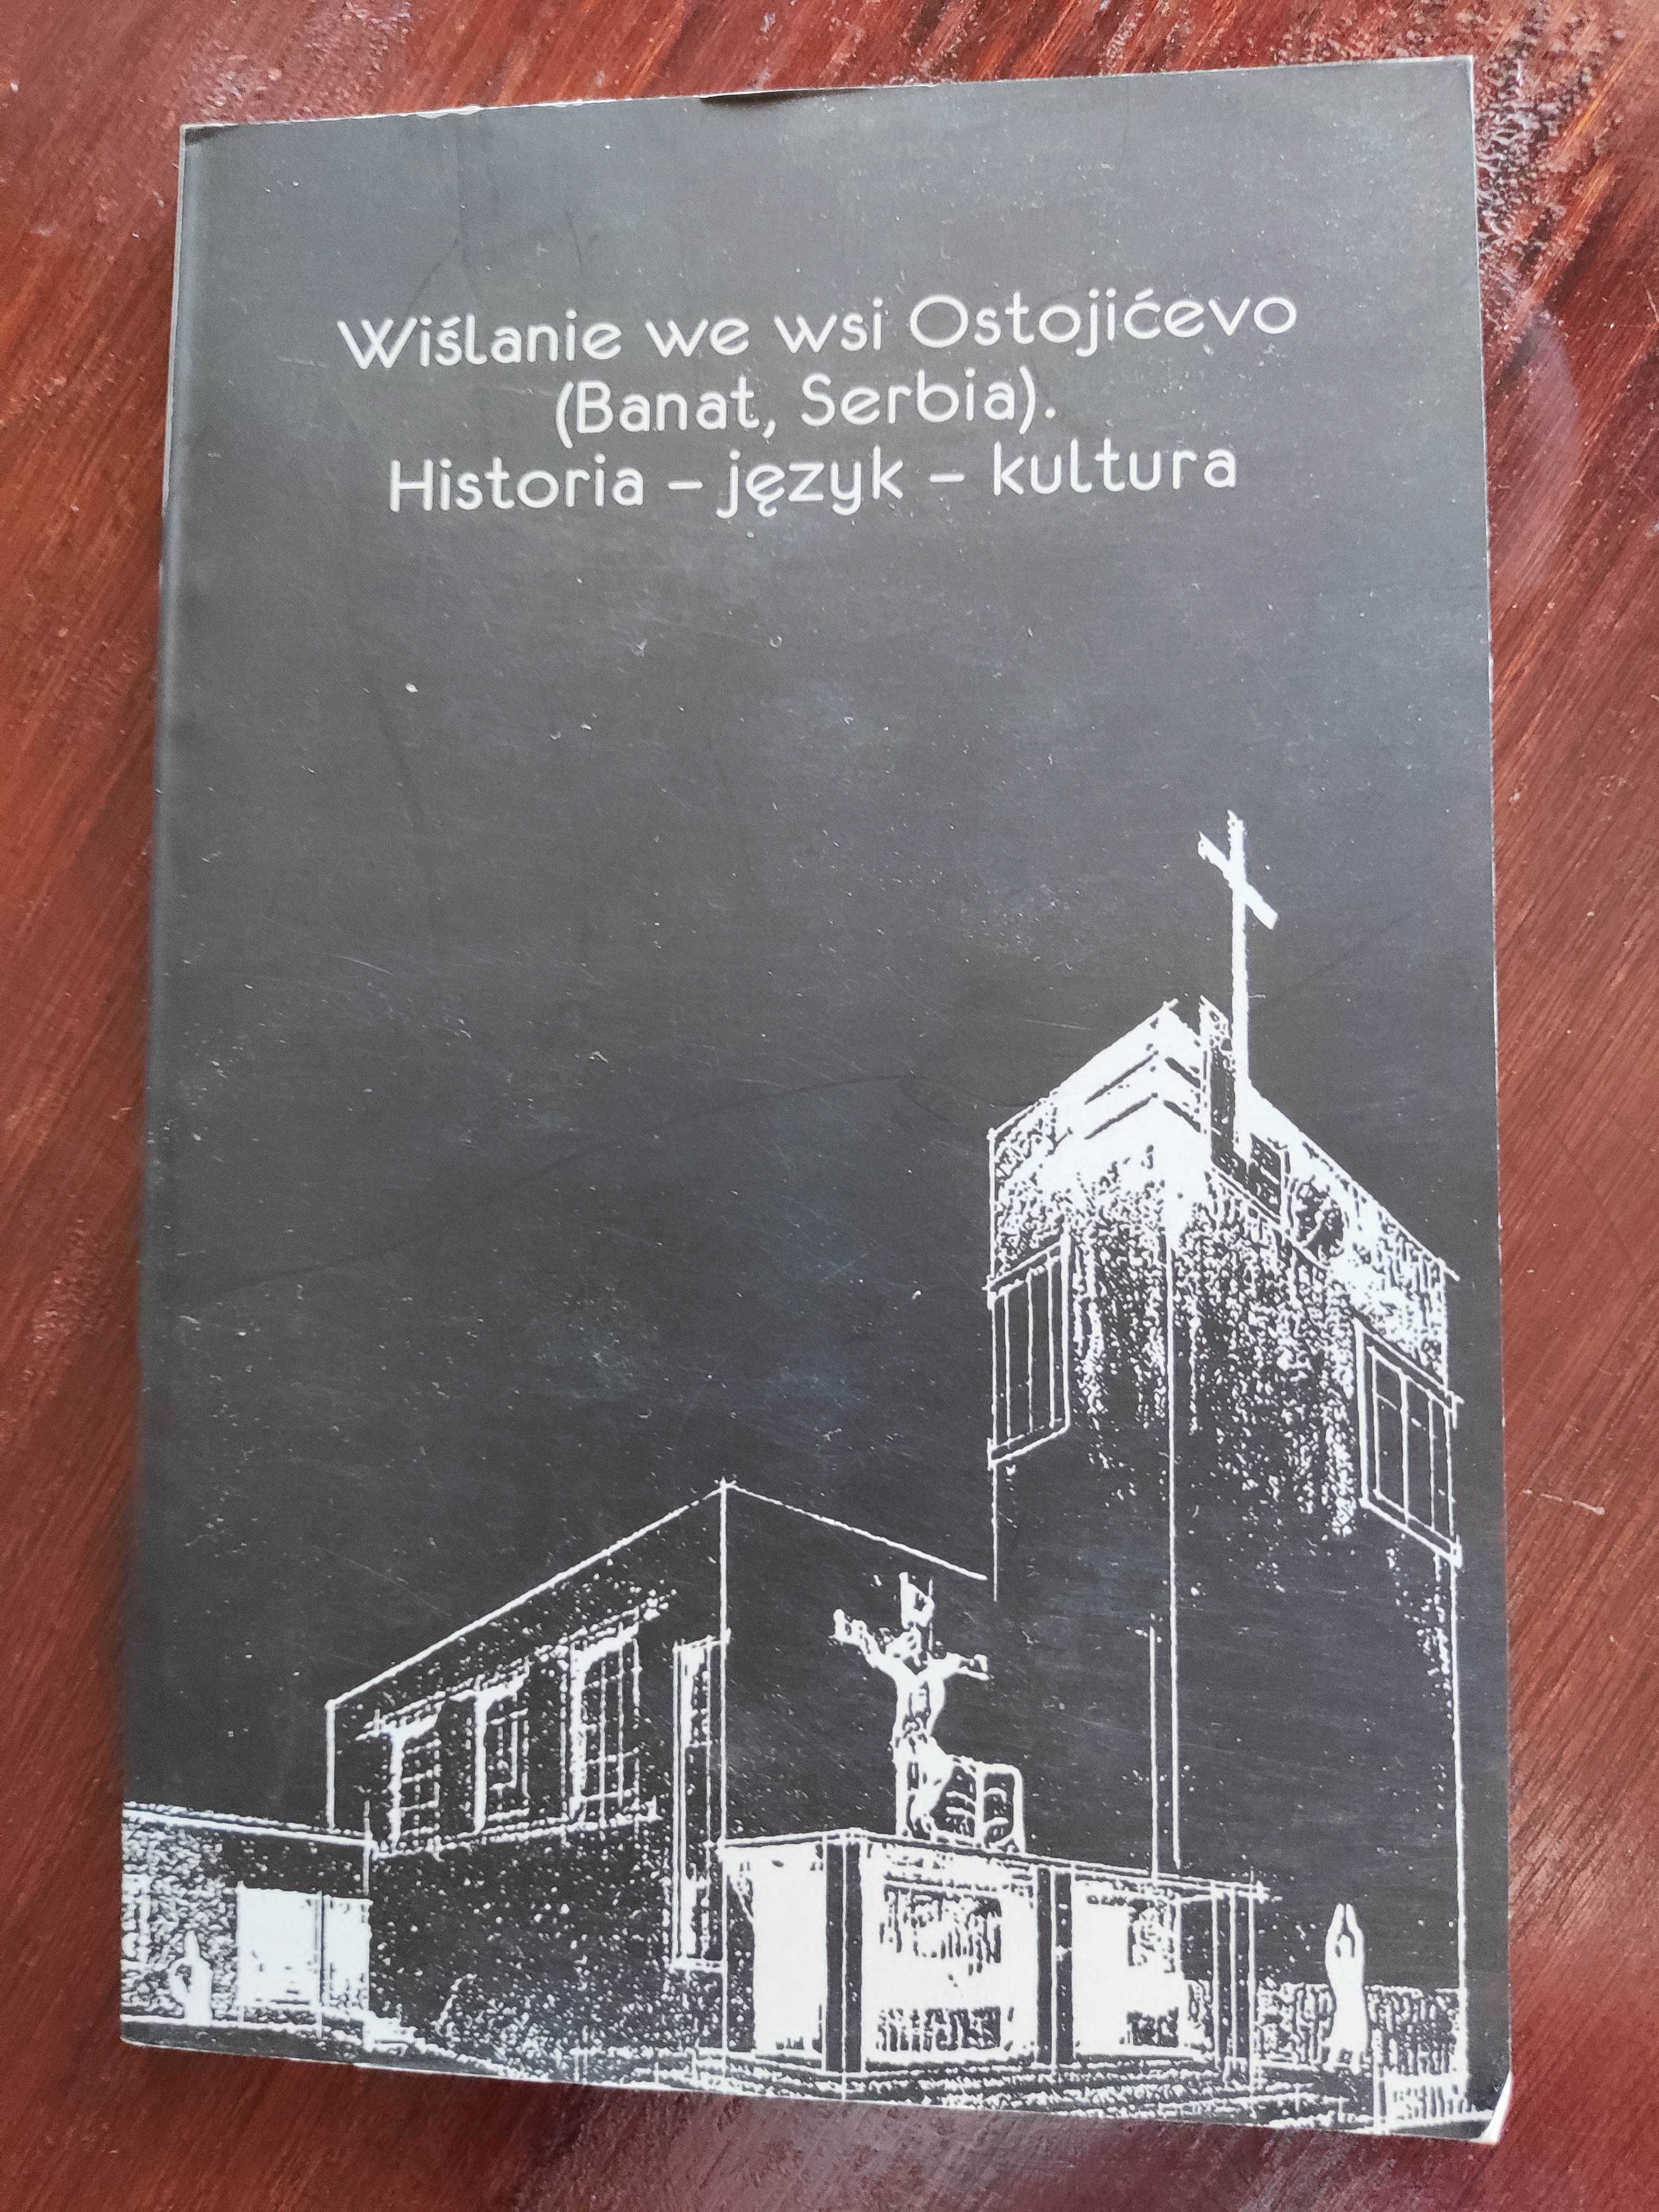 "Wiślanie we wsi Ostojicevo (Banat, Serbia)"